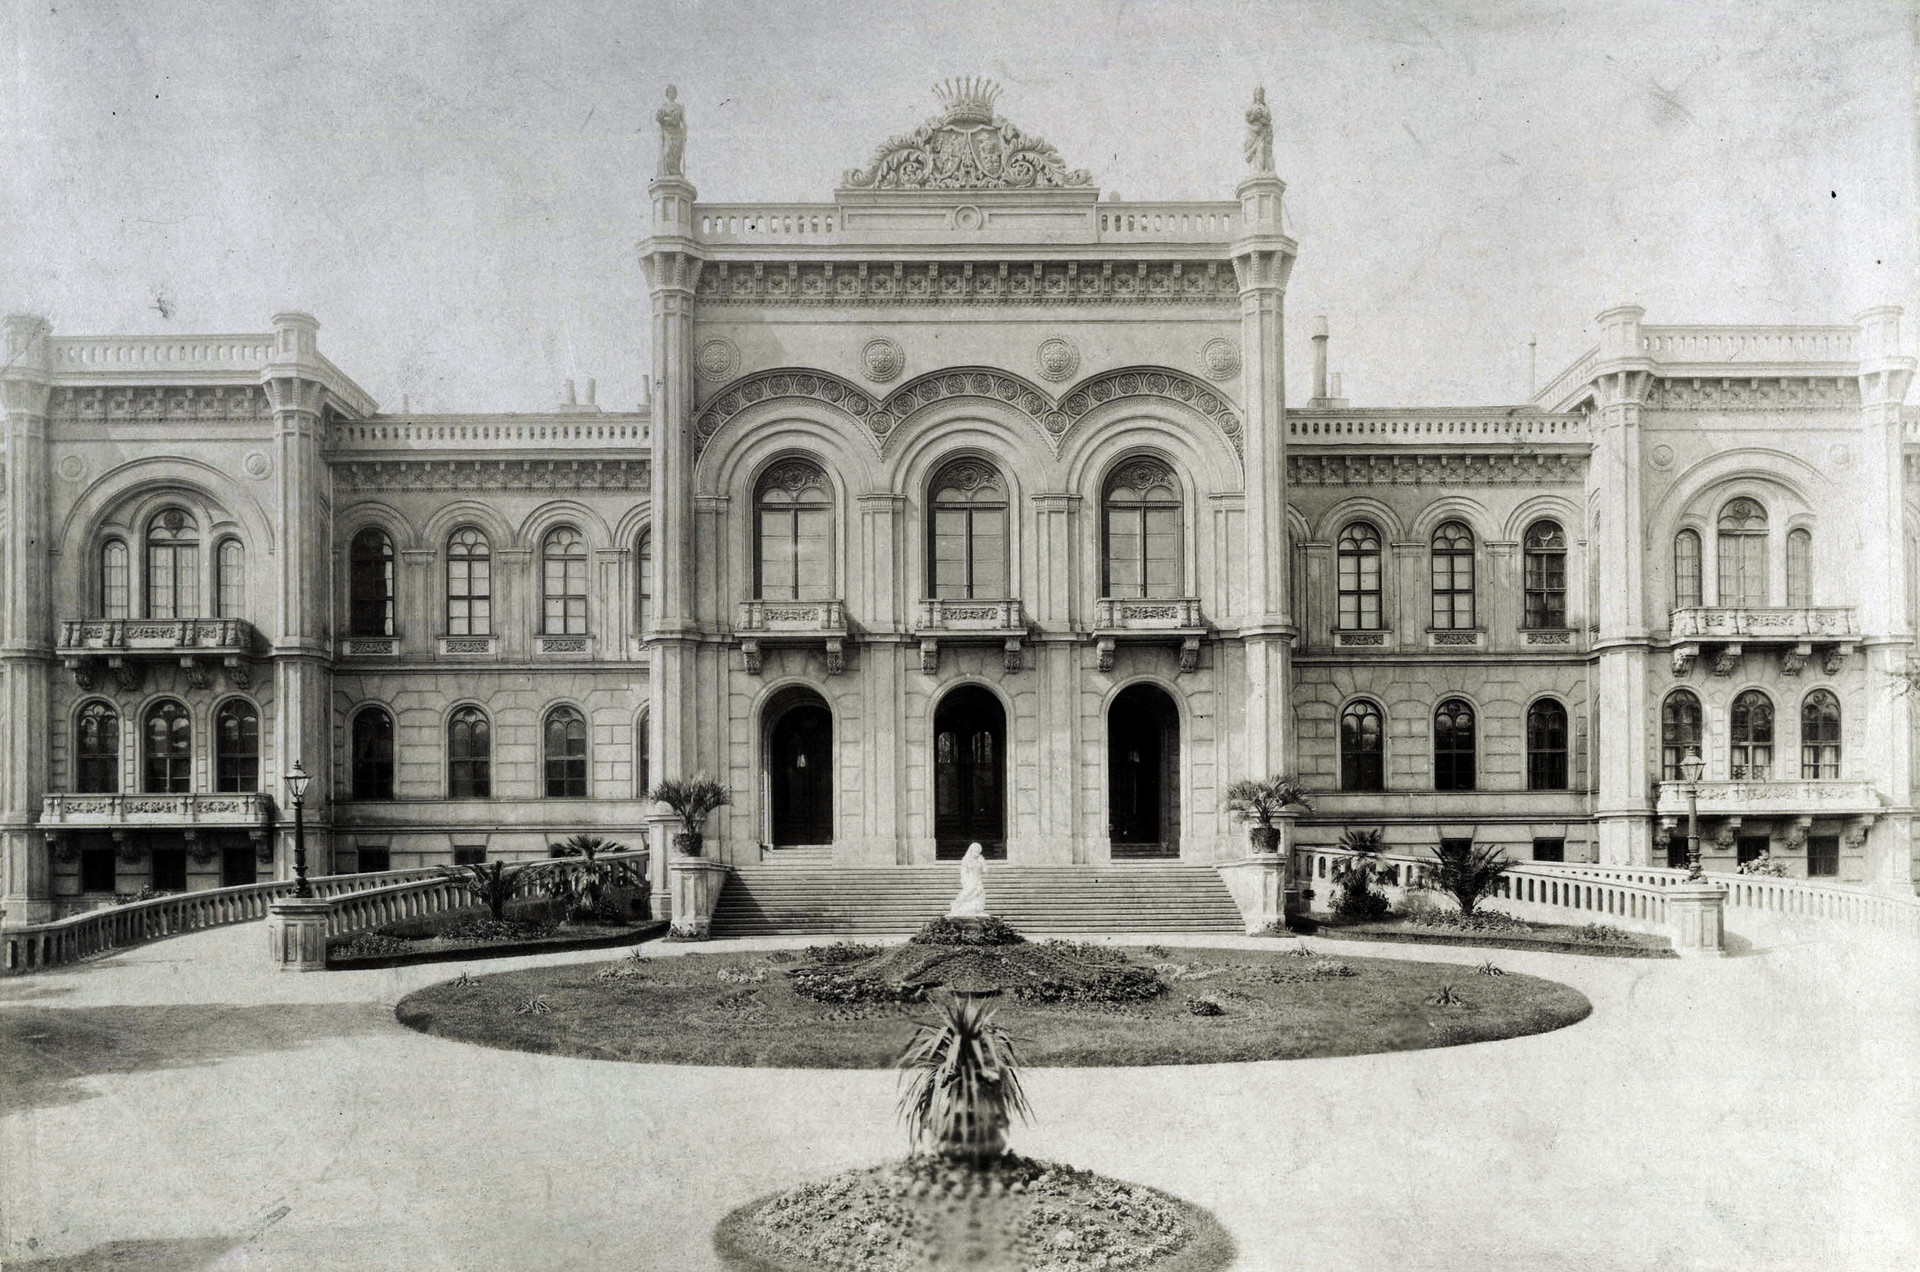 Buda legszebb palotája és a társasági élet központja volt, ahol még a spanyol király is megfordult – A Karátsonyi-palota